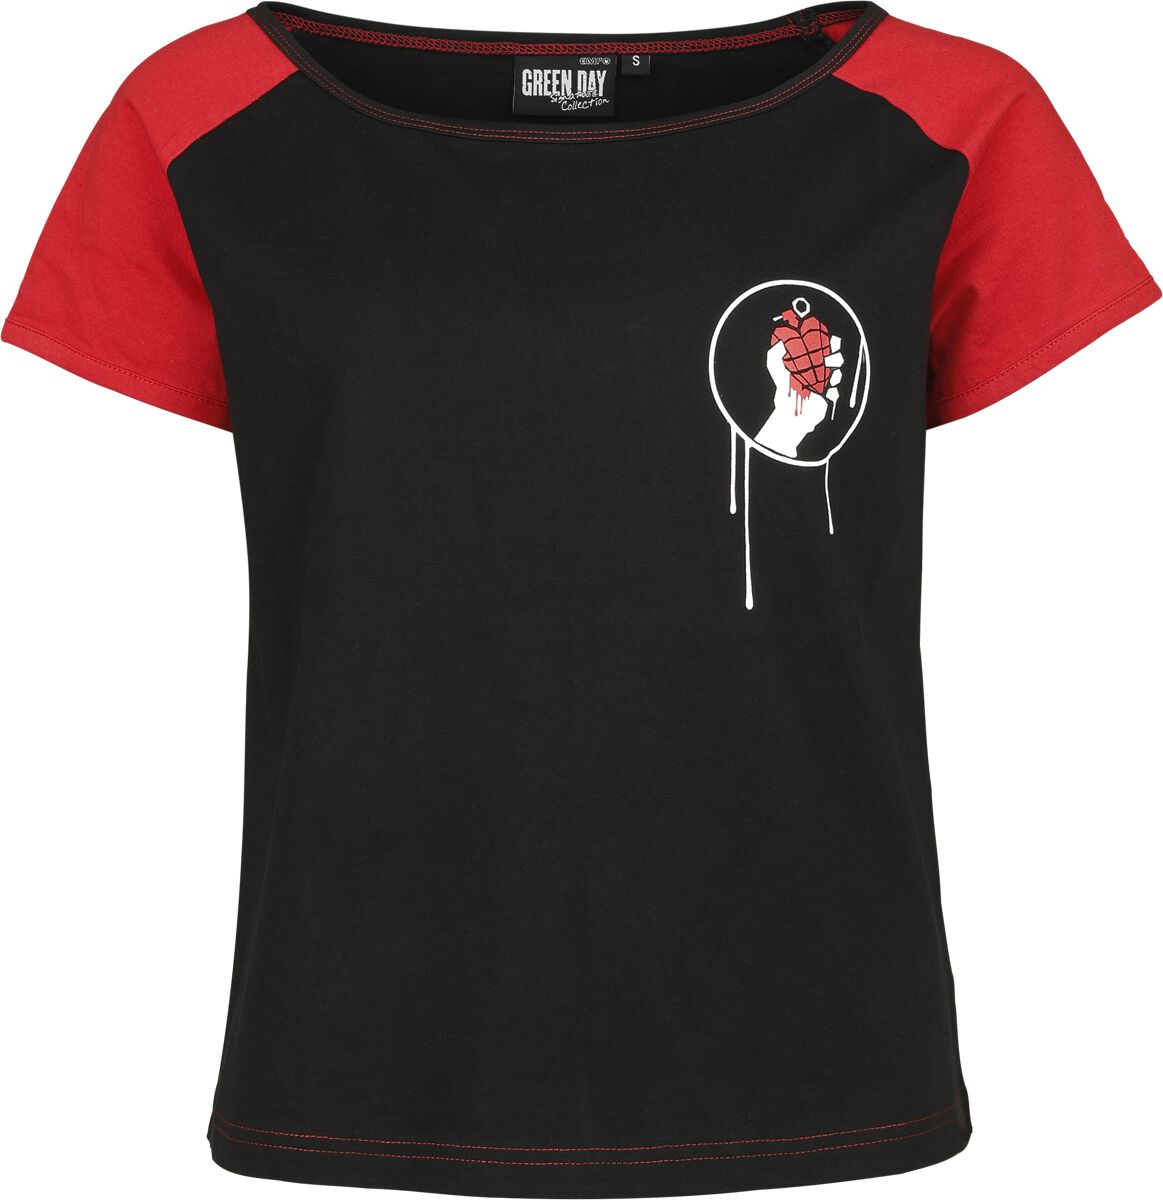 Green Day T-Shirt - EMP Signature Collection - XS bis XXL - für Damen - Größe S - schwarz/rot  - EMP exklusives Merchandise!